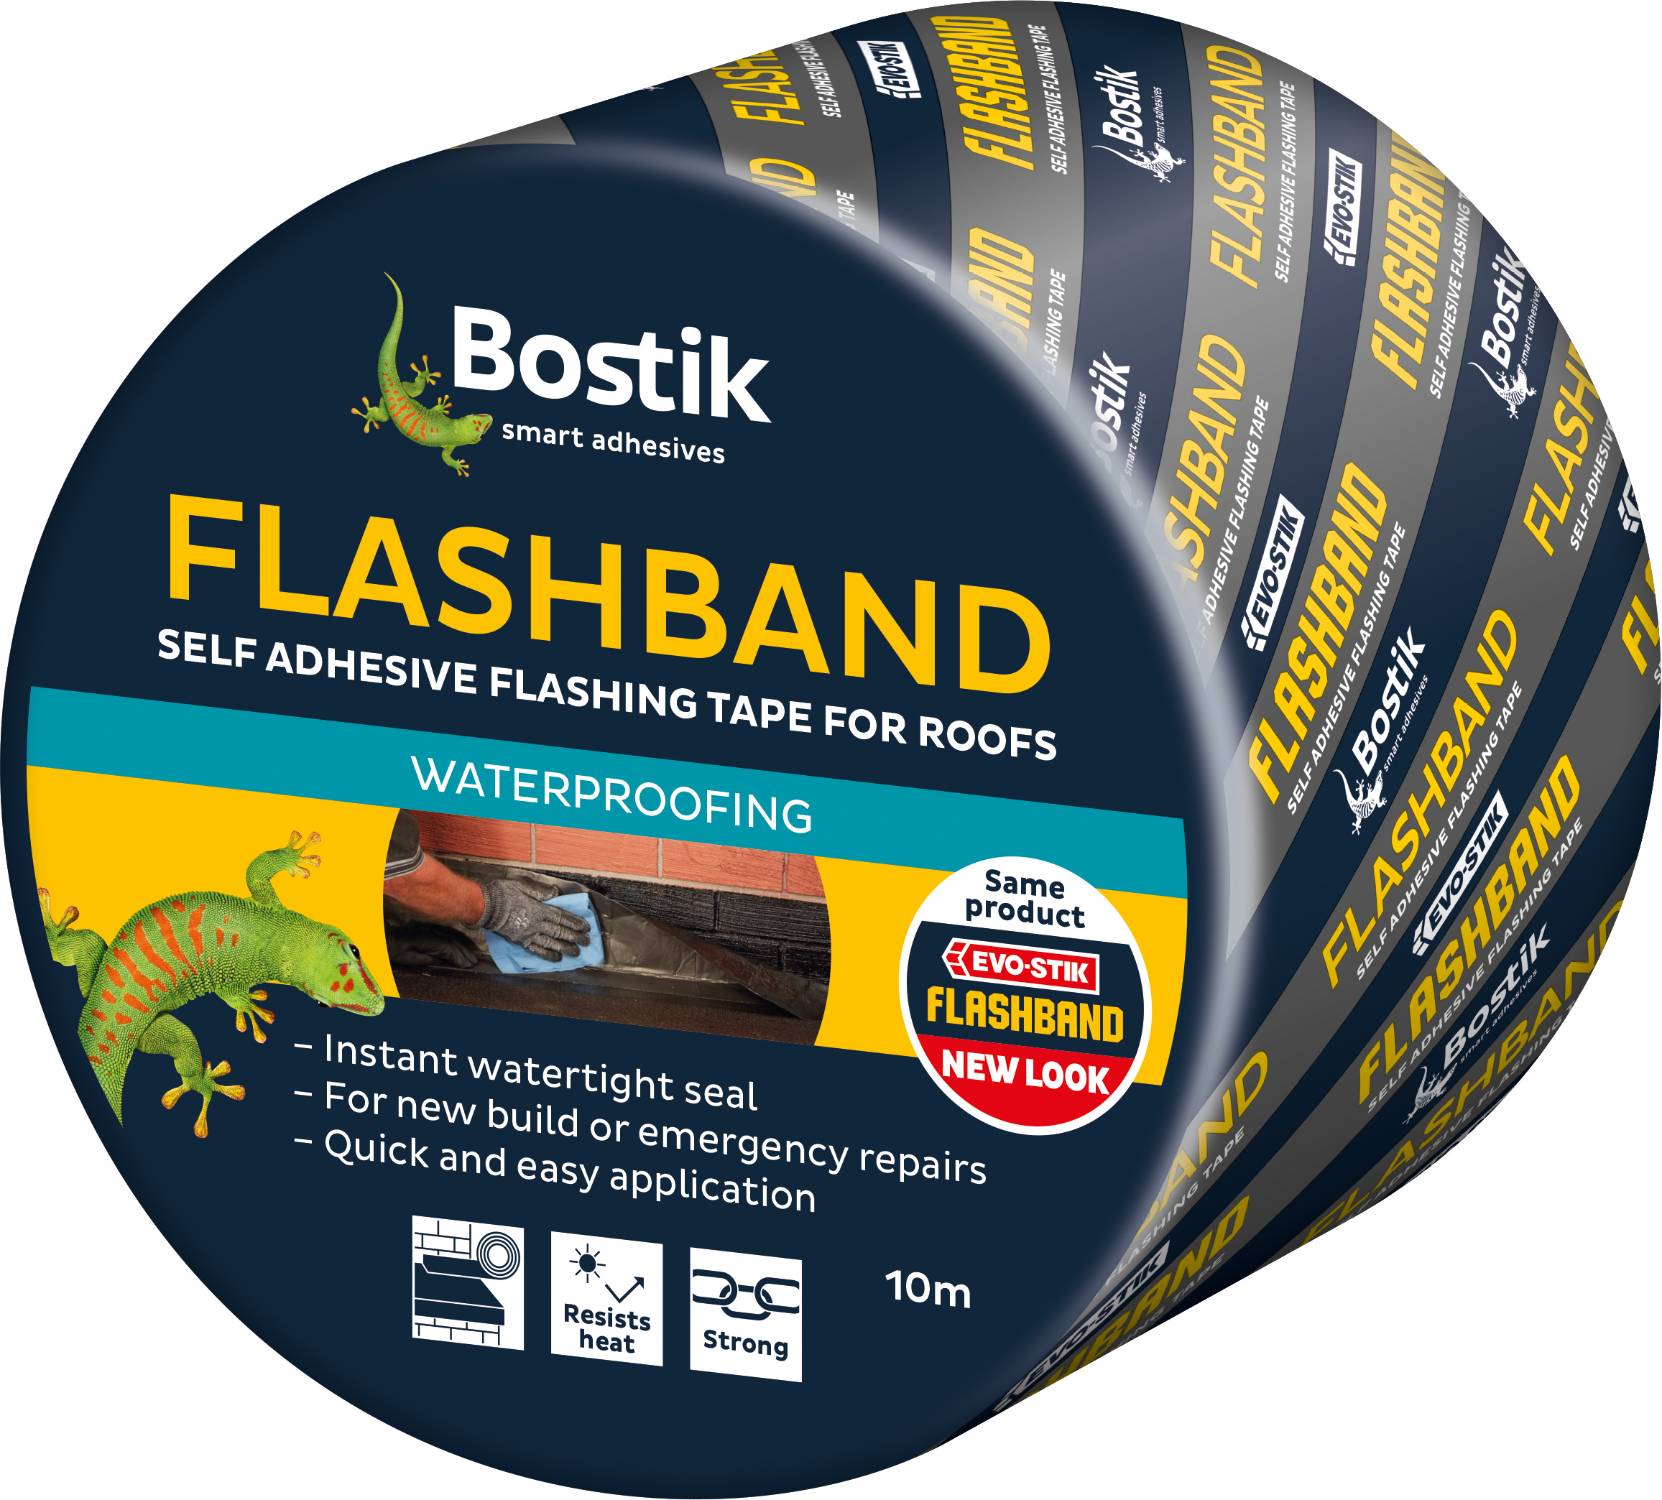 Bostik Flashband Self-Adhesive Flashing Tape. - Flashing tape  